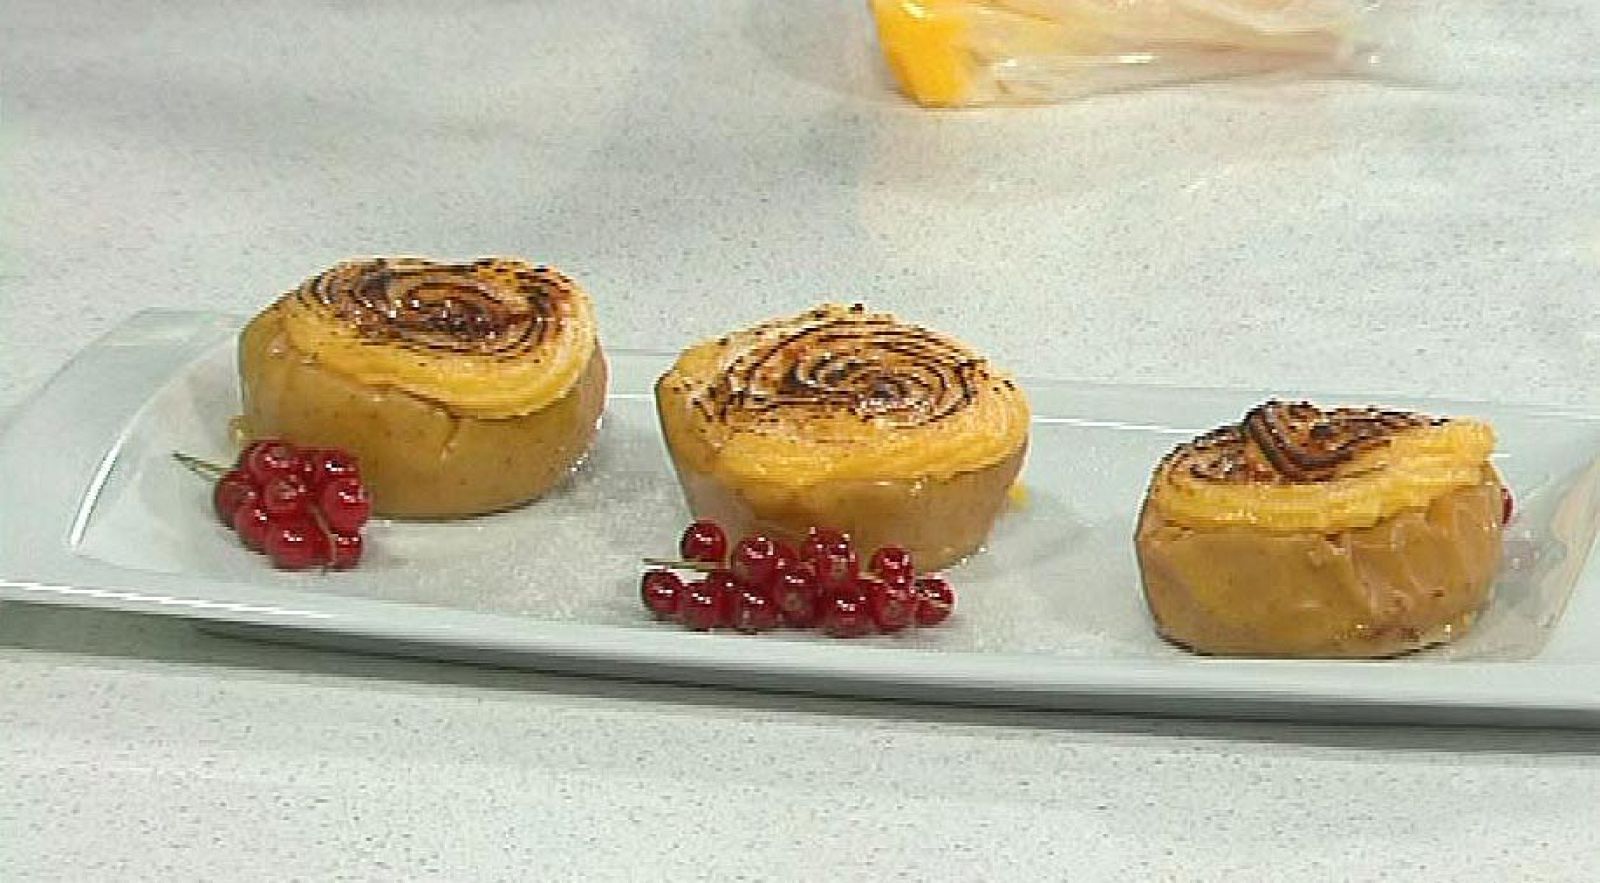 Manzanas asadas caramelizadas propuestas por Sergio Fernández en Saber Cocinar.